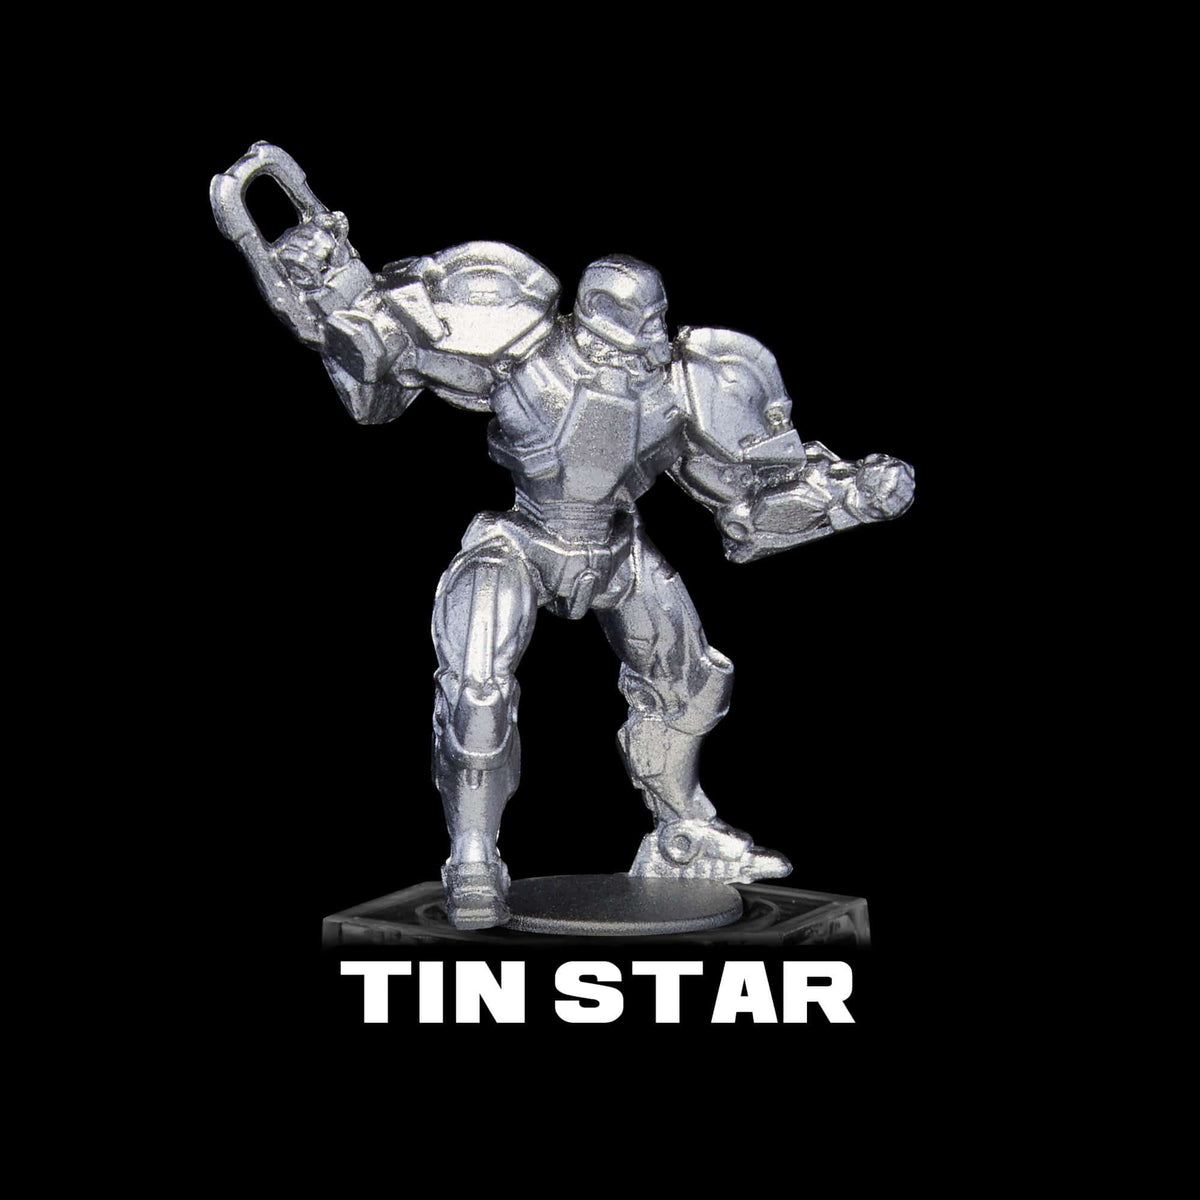 Tin Star Metallic Acrylic Paint Metallic Turbo Dork Exit 23 Games Tin Star Metallic Acrylic Paint